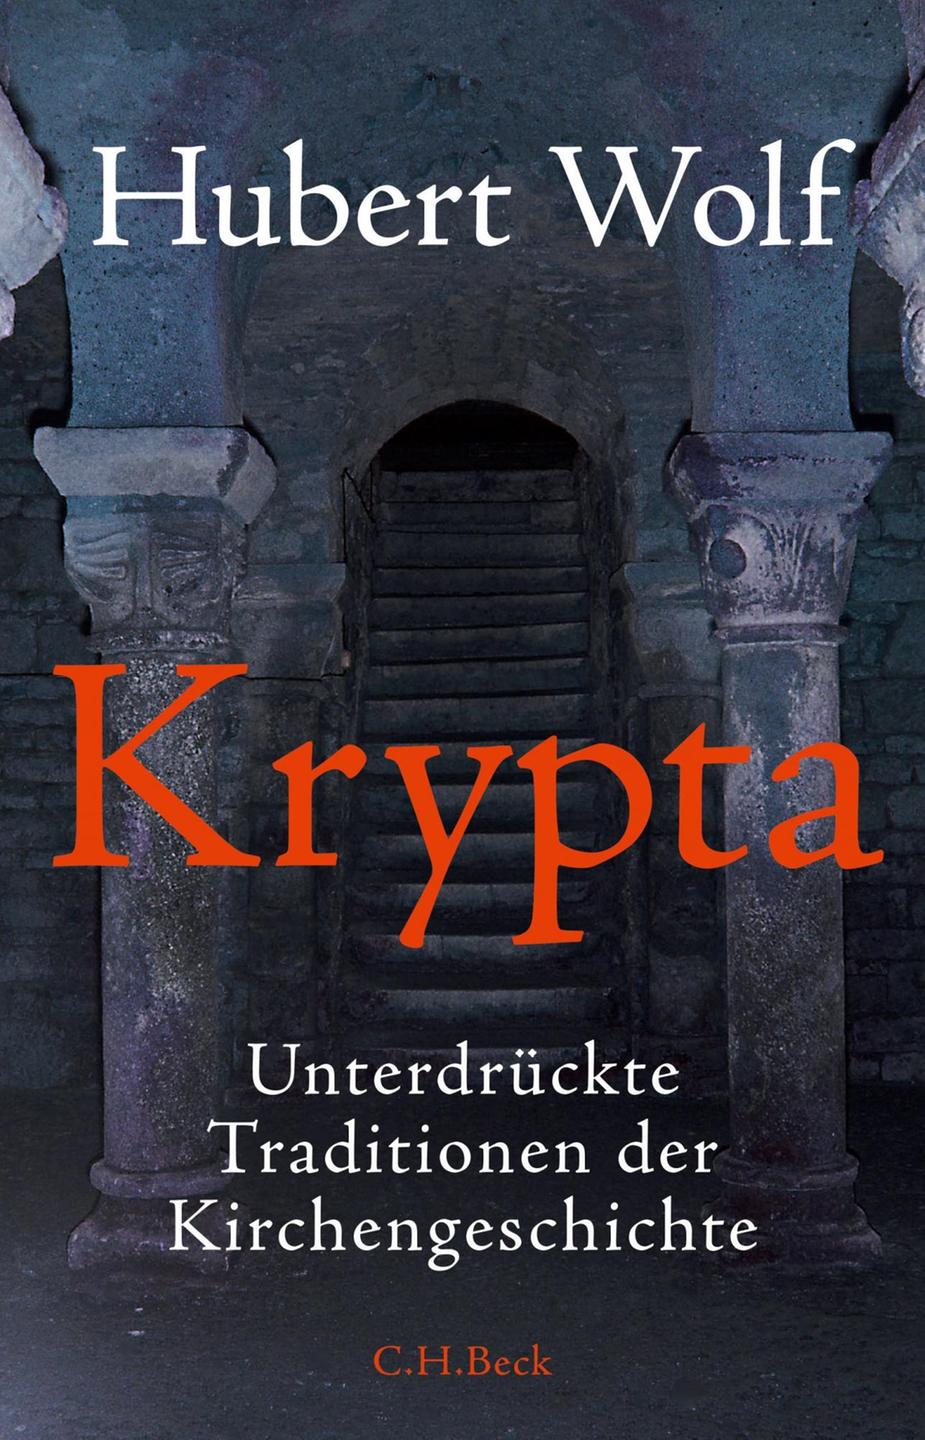 Hubert Wolf: Krypta. Unterdrückte Traditionen der Kirchengeschichte